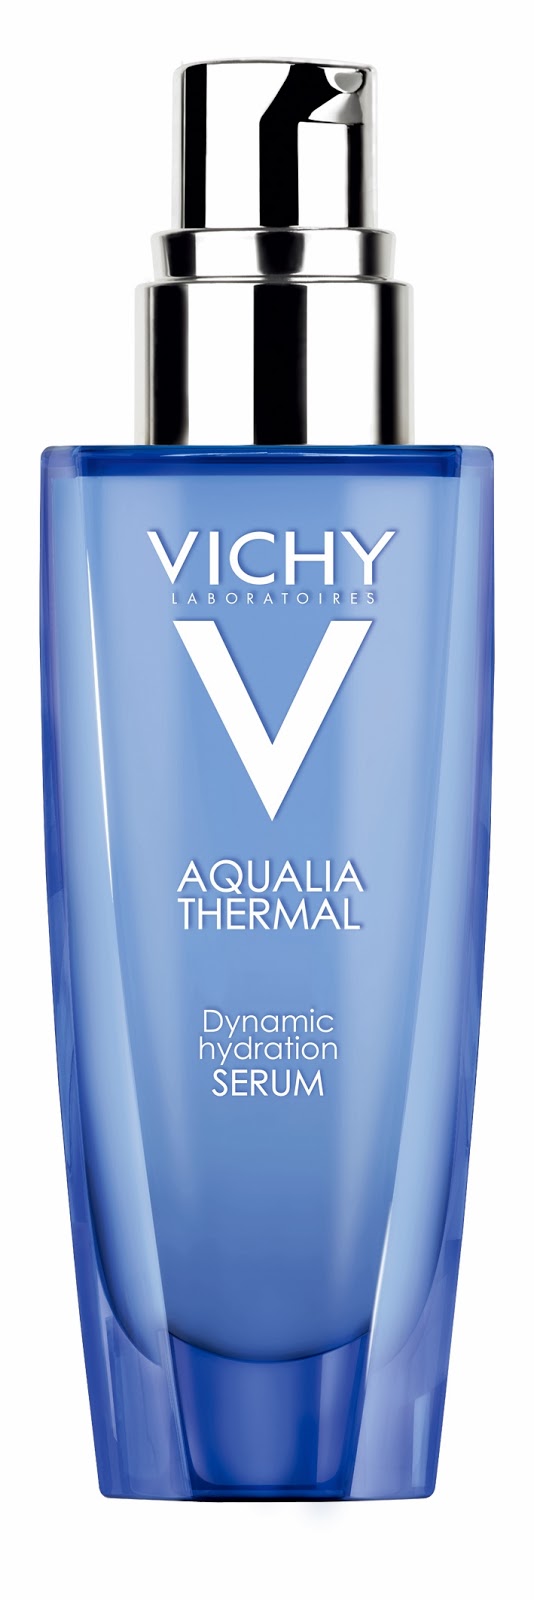 個底打得好..素顏無難度^^法國 Vichy Aqualia Thermal 活水循環保濕精華及睡眠面膜